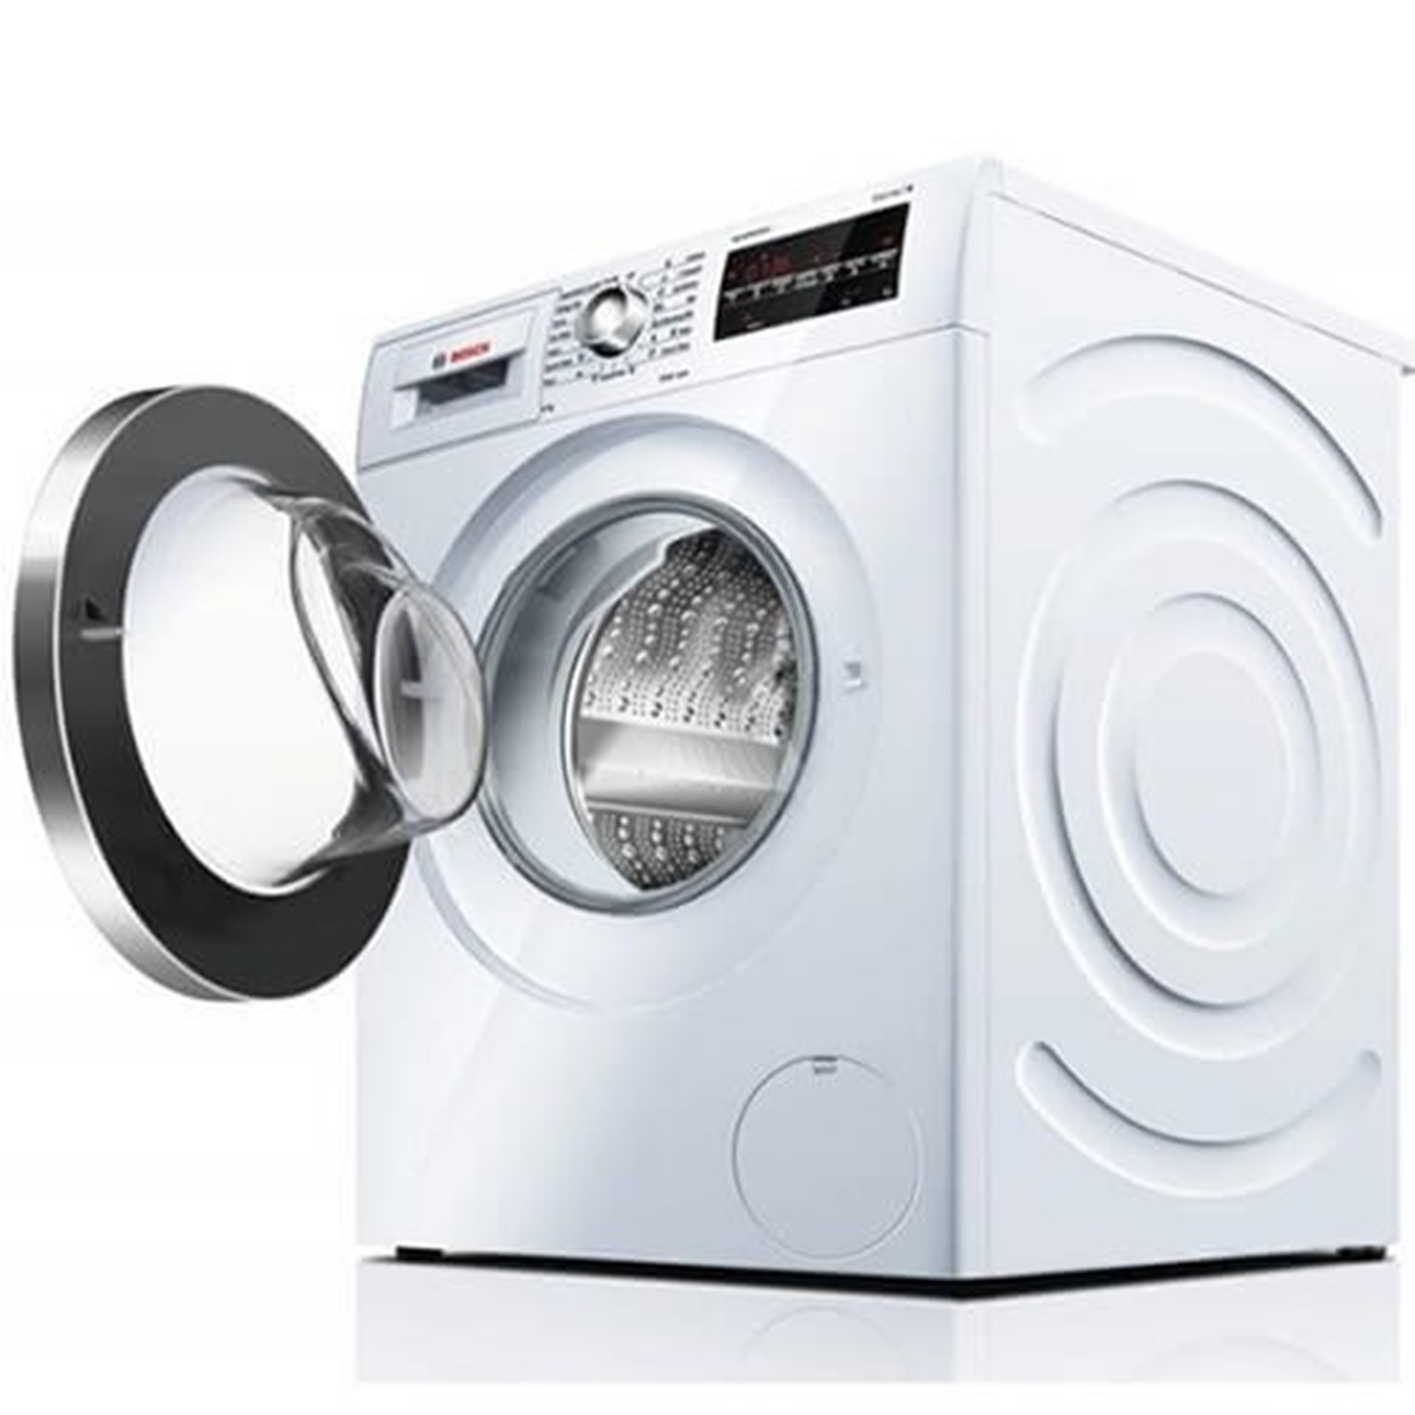 Máy giặt Bosch WAW28560EU